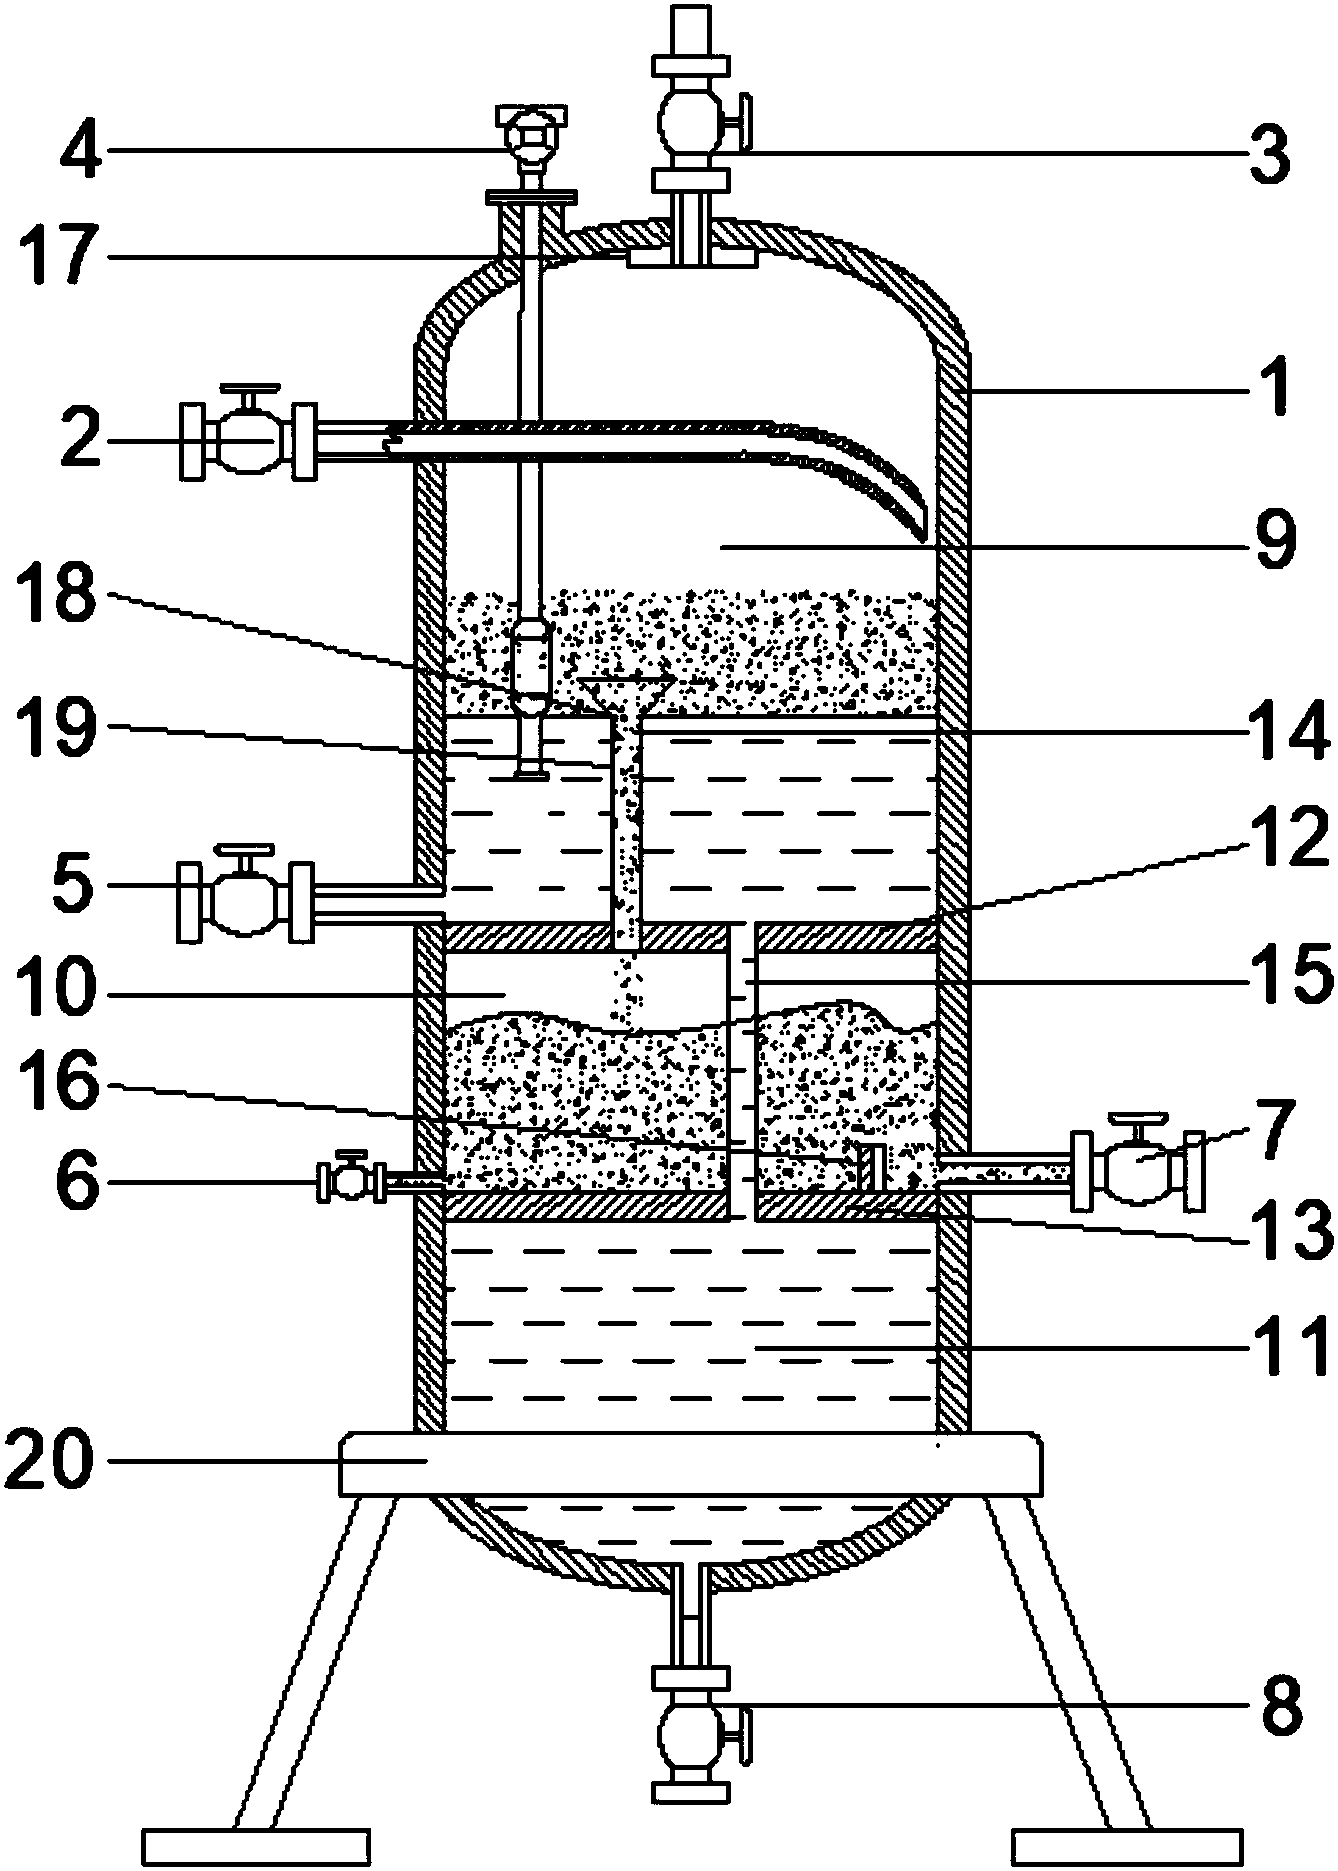 机油水分离器,包括:主体,输入管道,界面液位计;主体为圆形筒状结构